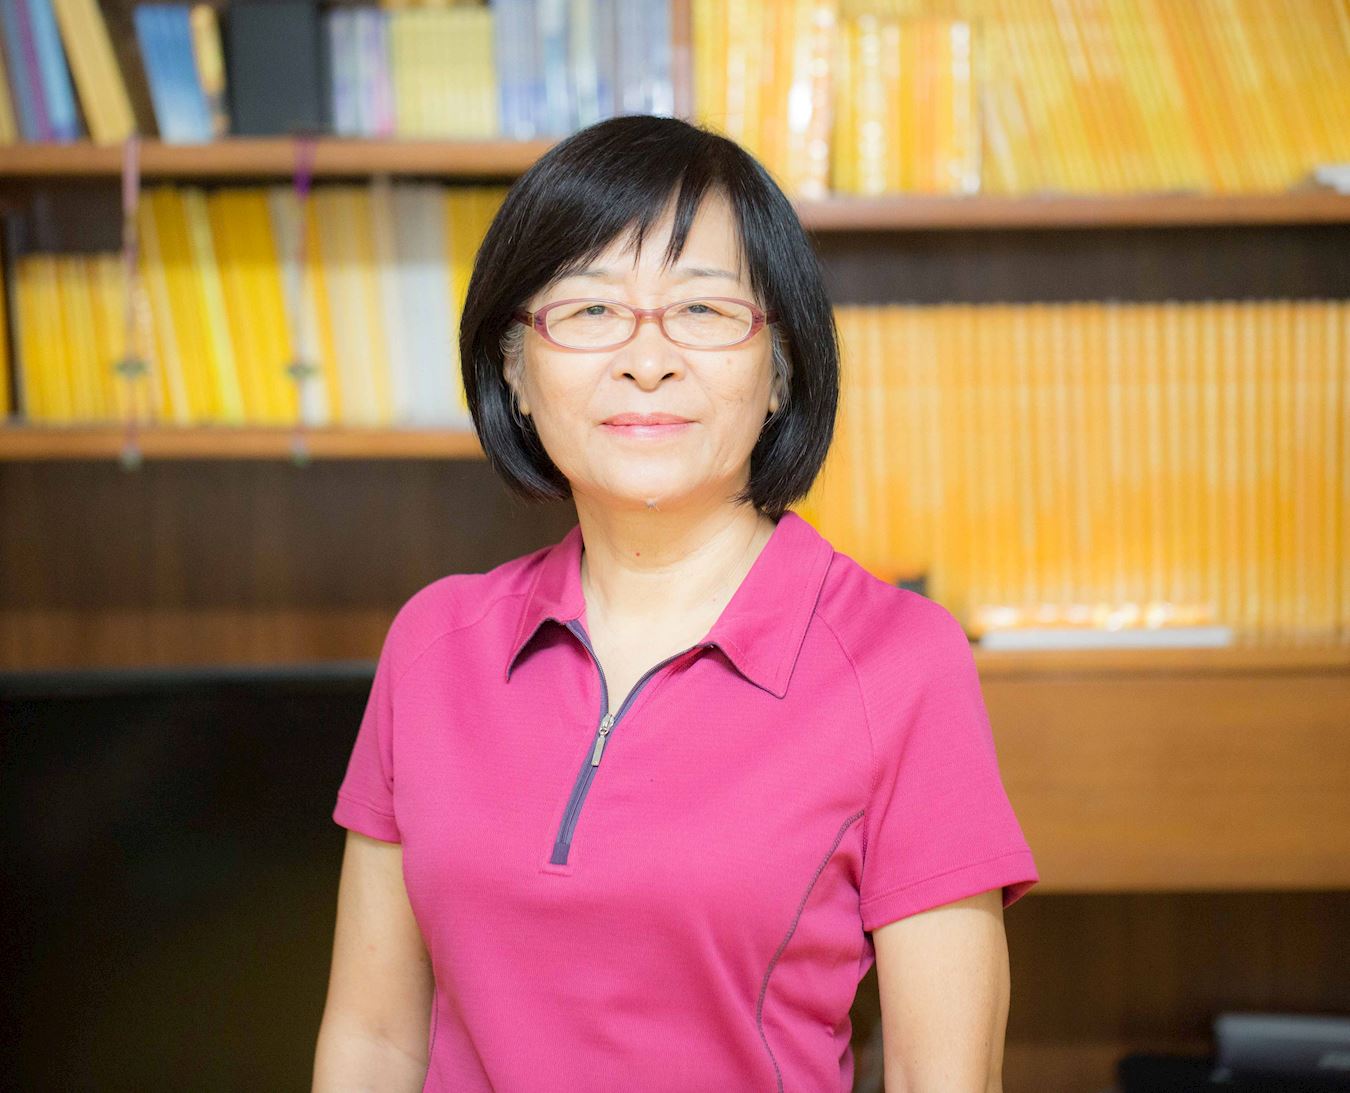 琼花女士是台湾的国中退休教师。一天，她看到一本书，刹那间，一直迷惑不解的人生问题都得到了解答。（明慧网） 